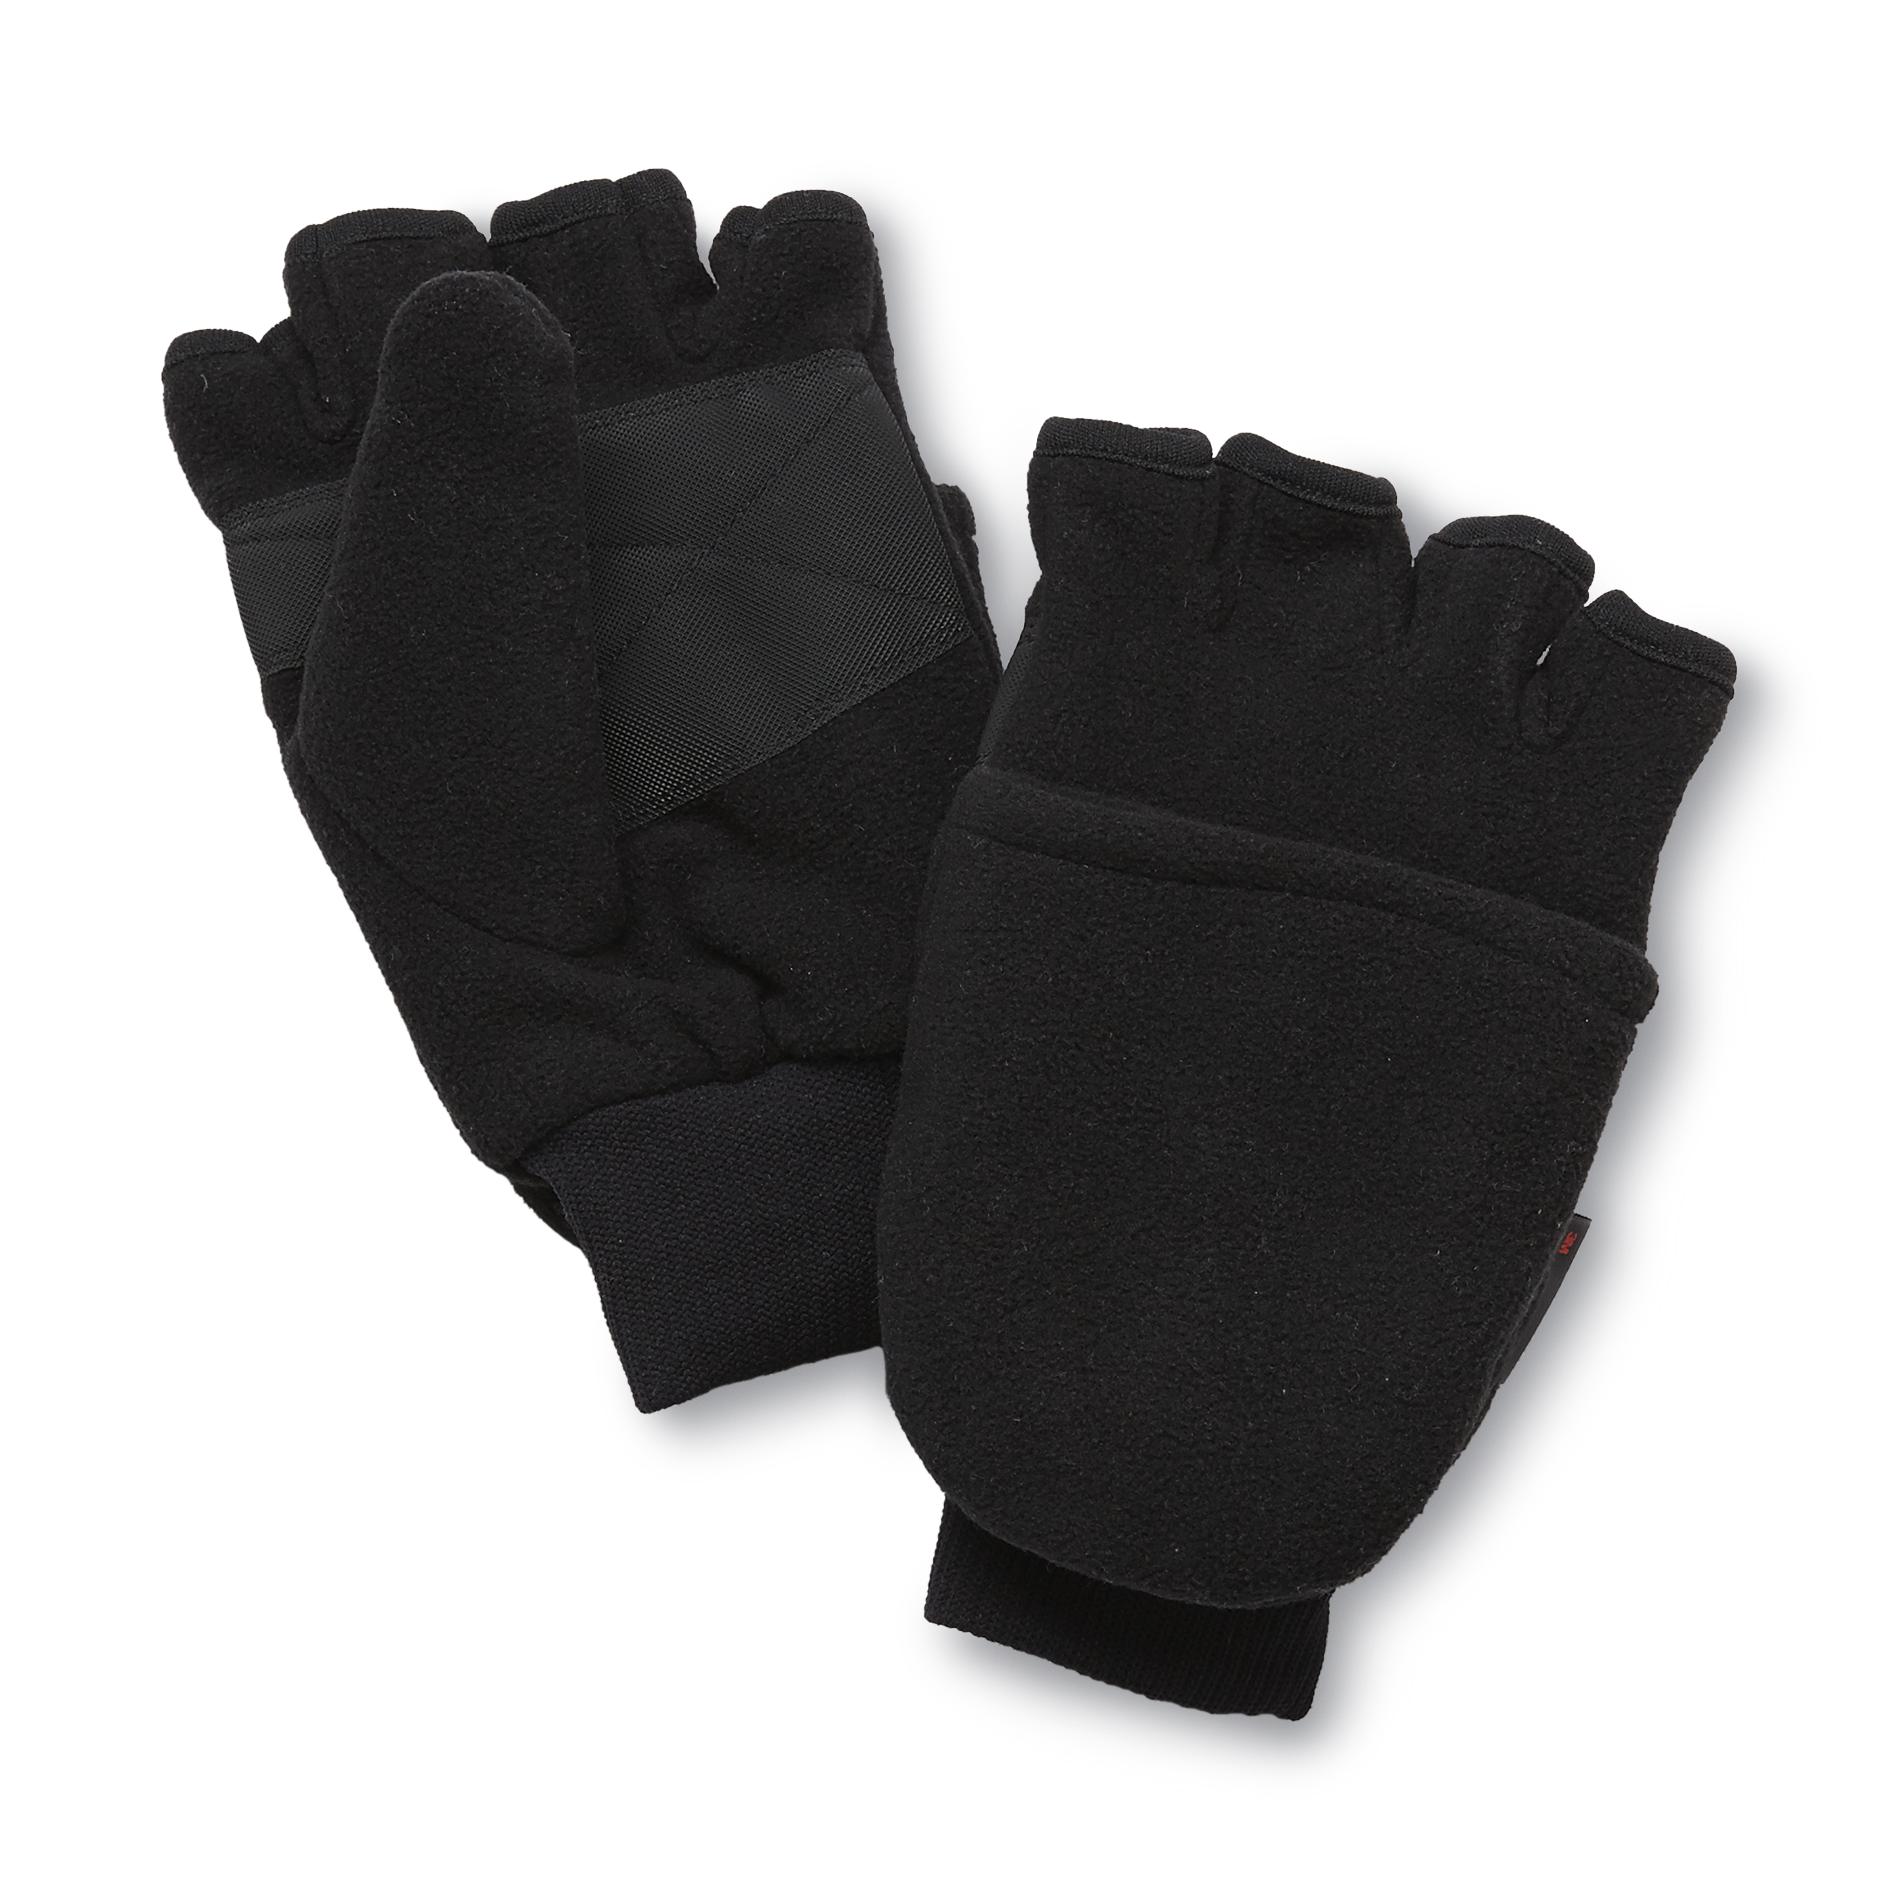 NordicTrack Men's Convertible Fleece Gloves